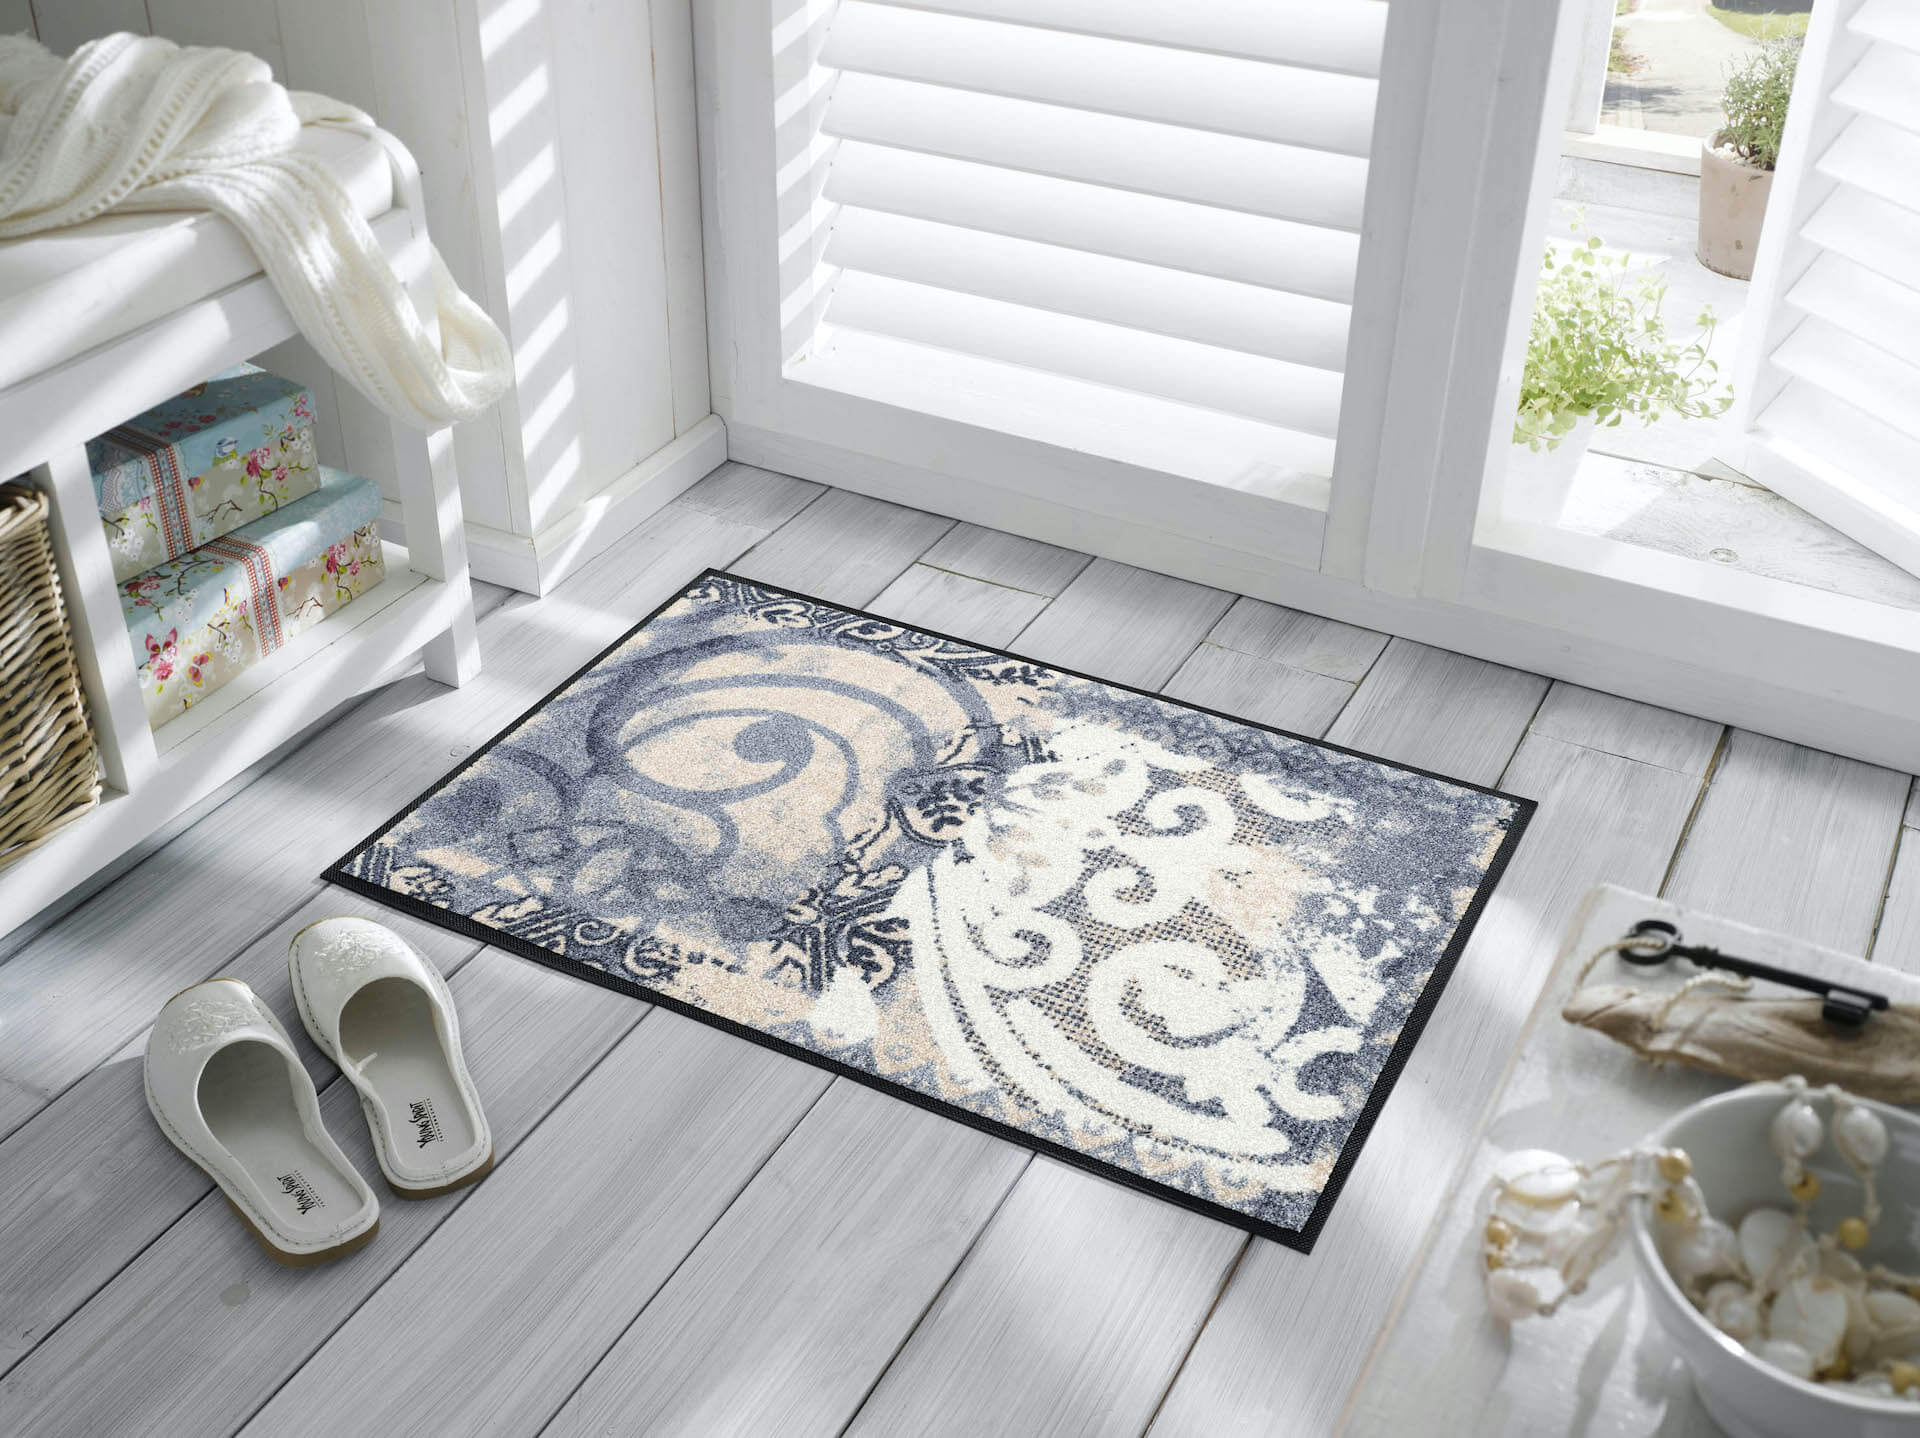 Fußmatte Arabesque, Wash & Dry Interior Design, grau/weiß, 050 x 075 cm, Interieurbild